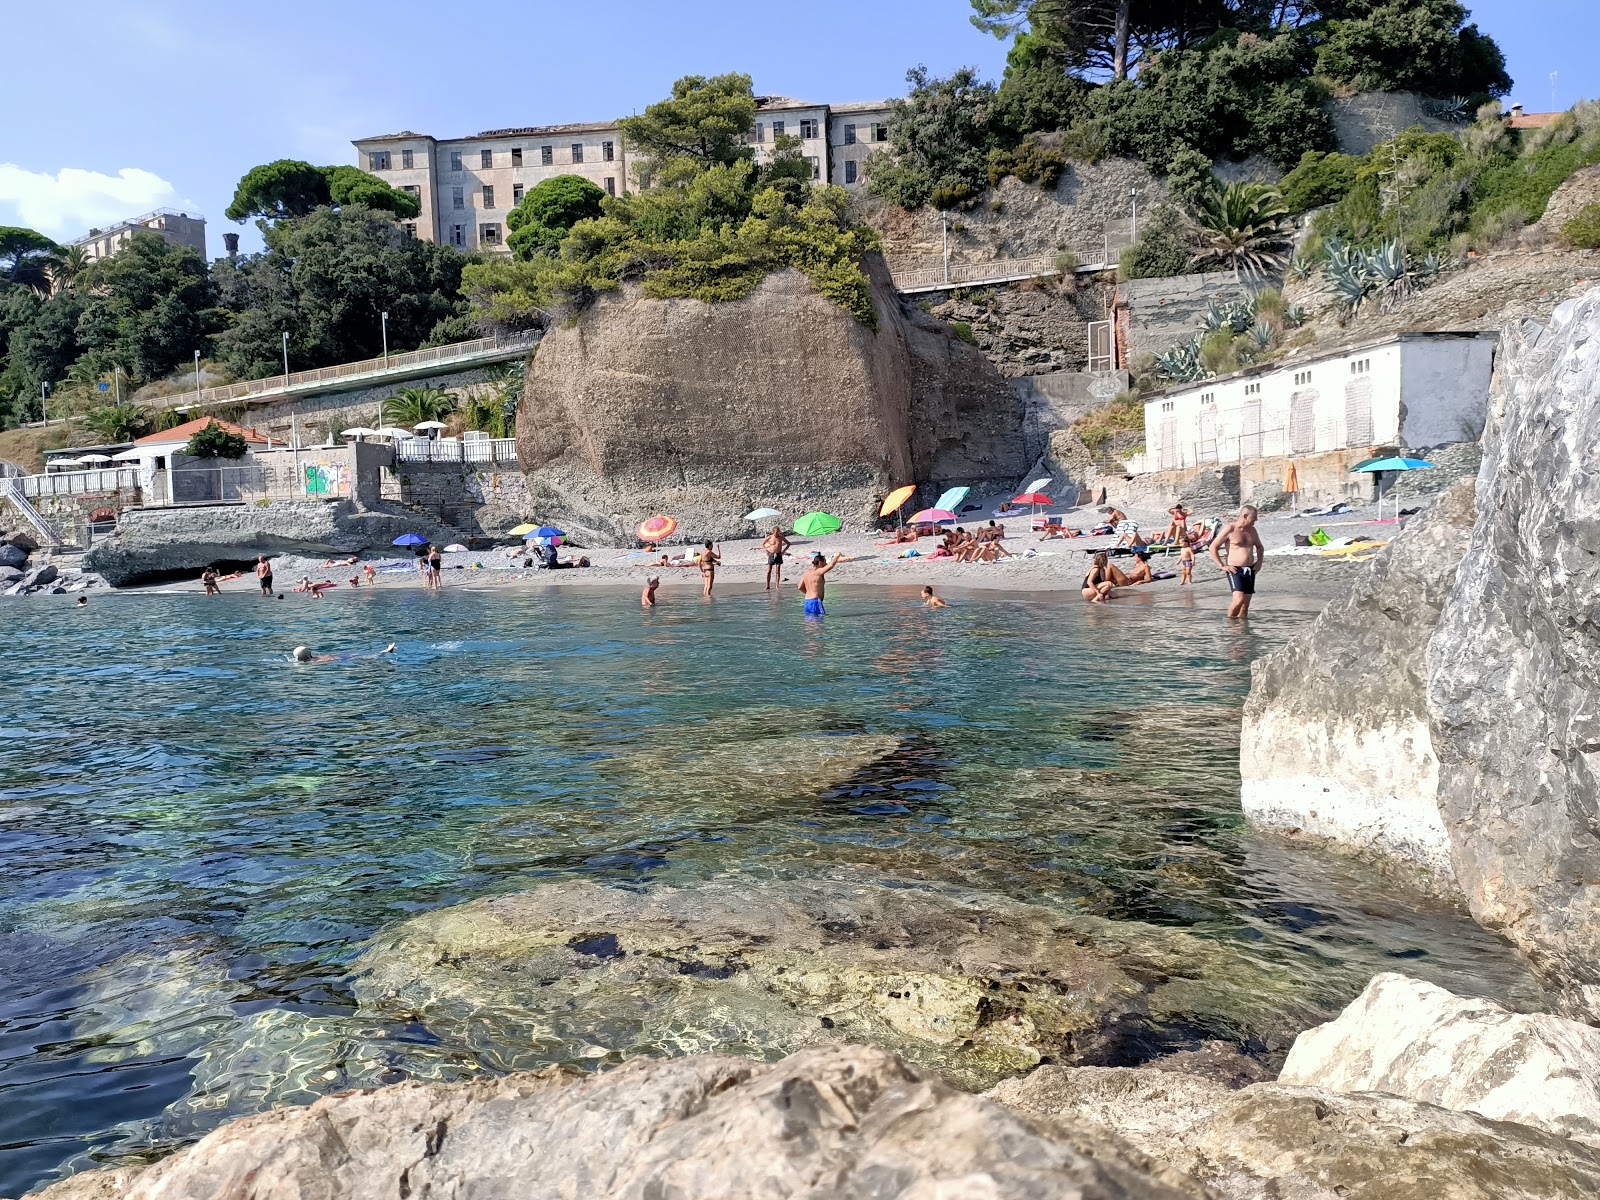 Foto von Spiaggia Libera Comunale mit viele kleine buchten